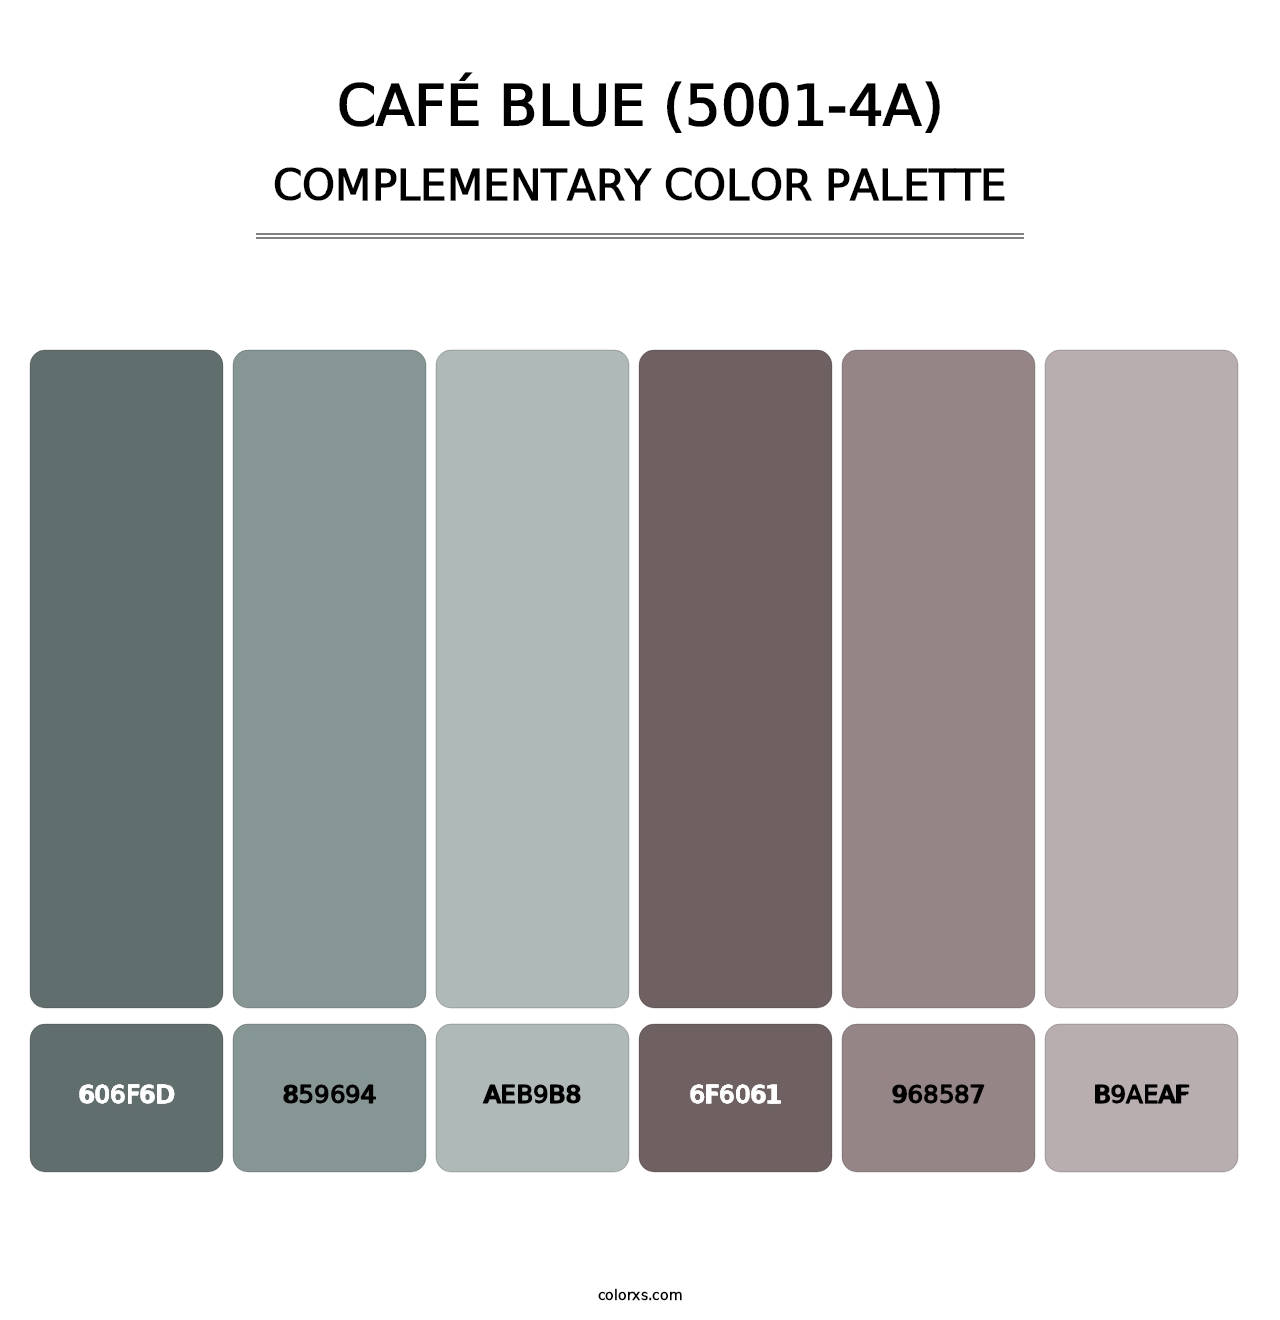 Café Blue (5001-4A) - Complementary Color Palette